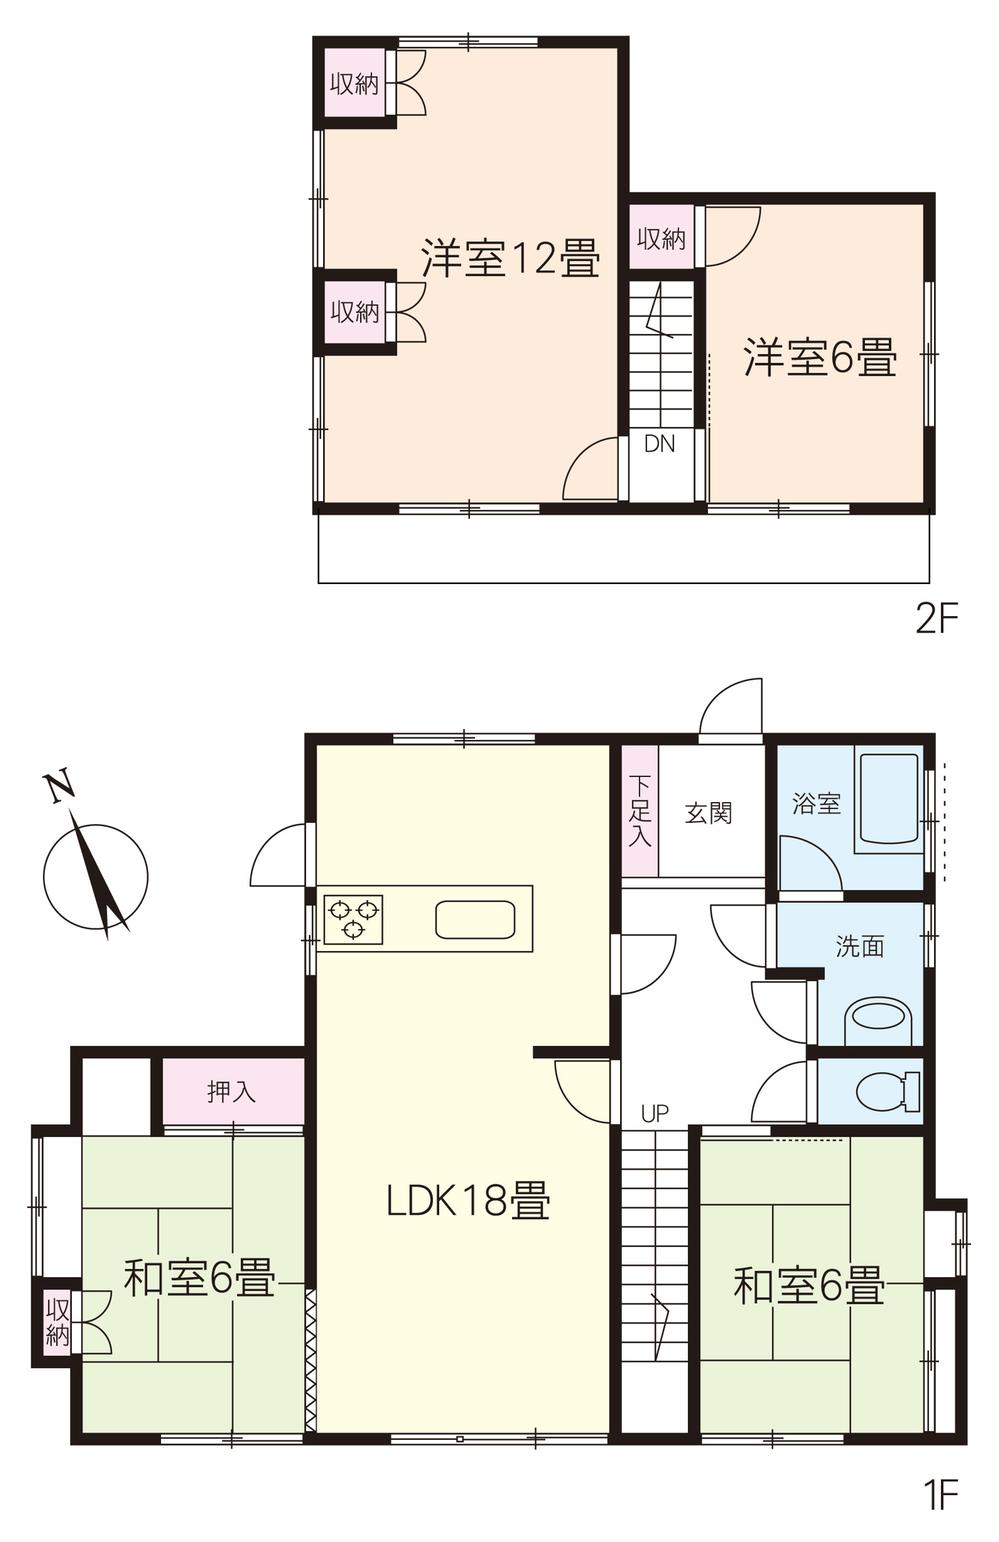 Floor plan. 7.9 million yen, 4LDK, Land area 170.29 sq m , Building area 103.09 sq m